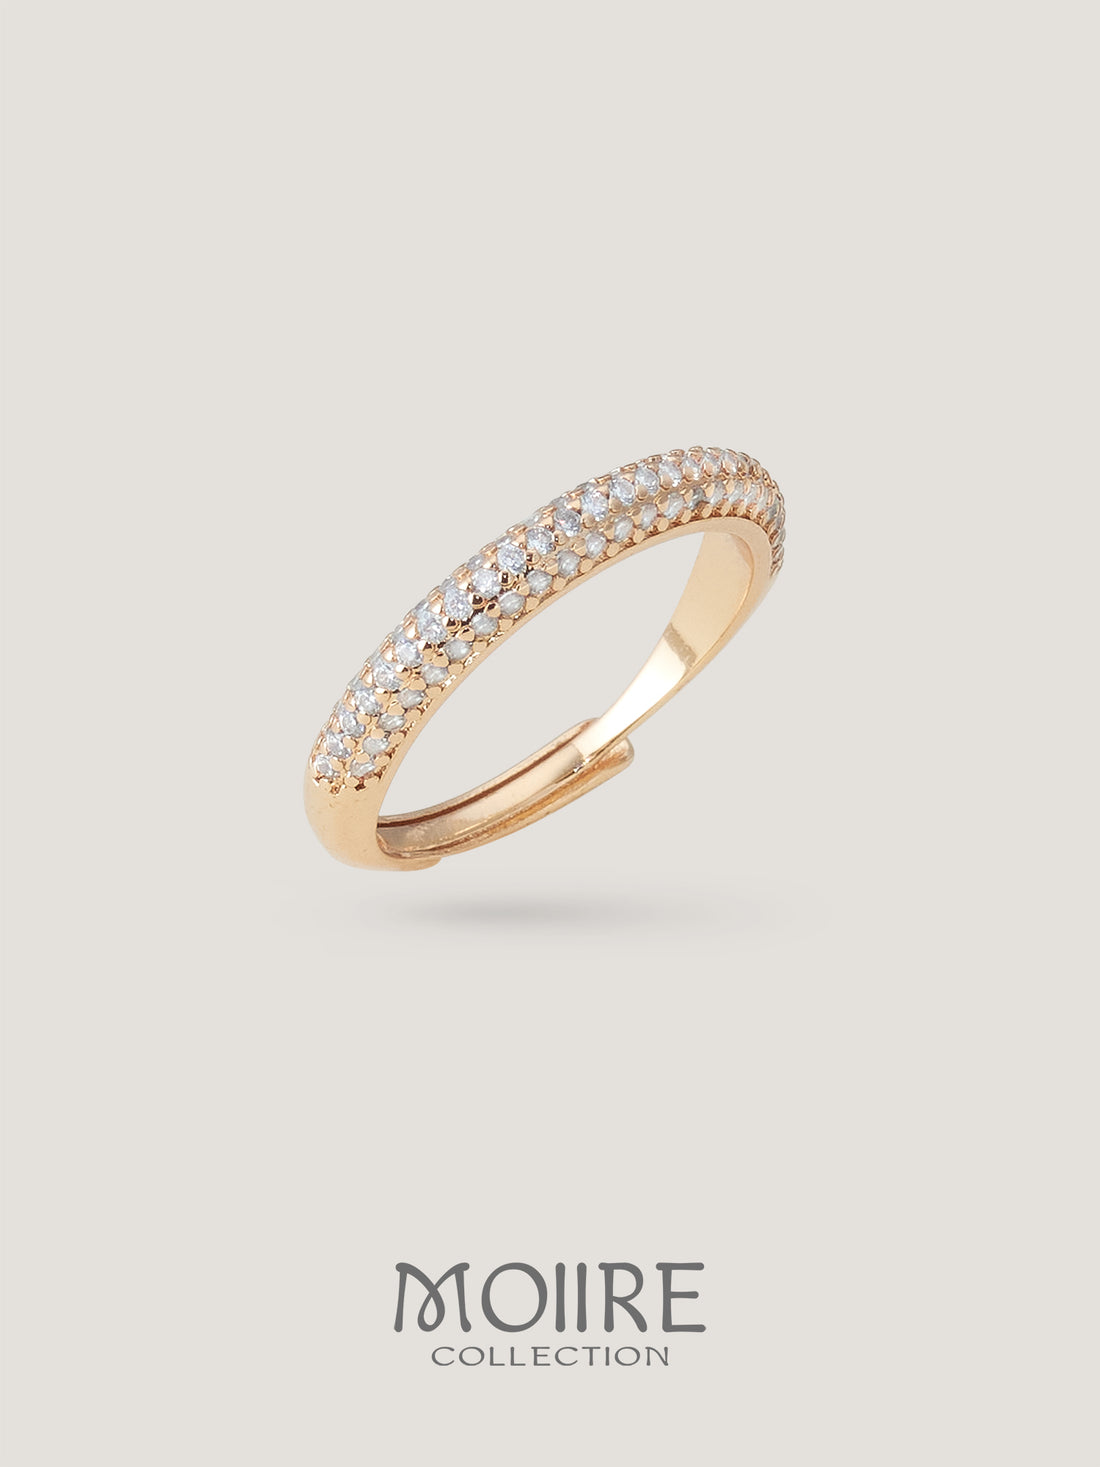 Moiire Jewelry | 春山里